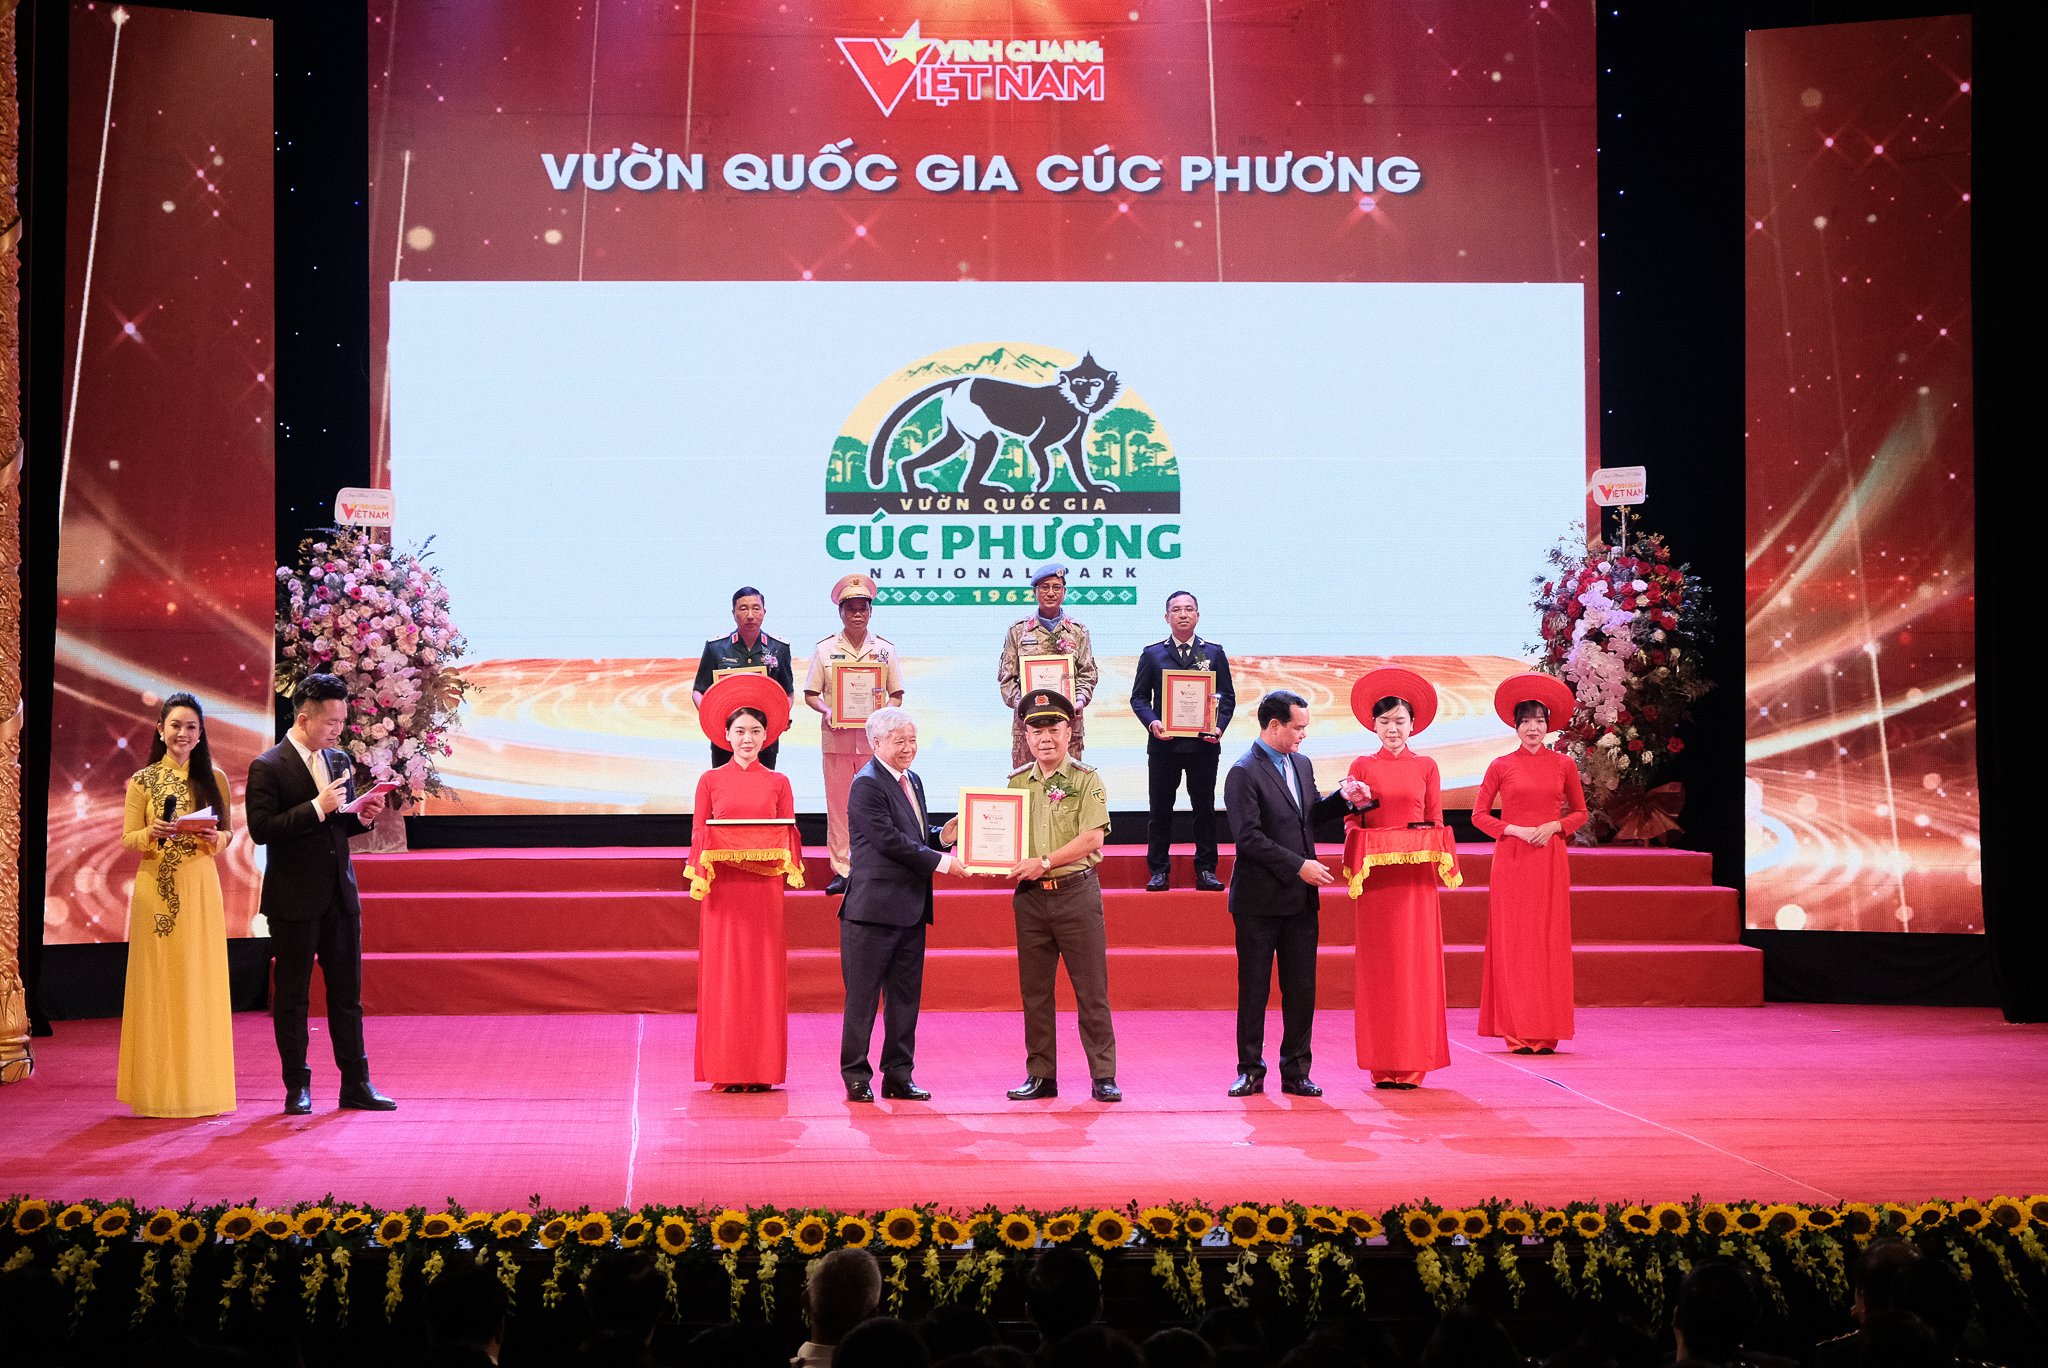 Một Vườn Quốc gia được tôn vinh tại Chương trình "Vinh quang Việt Nam" tổ chức tại Hà Nội- Ảnh 2.